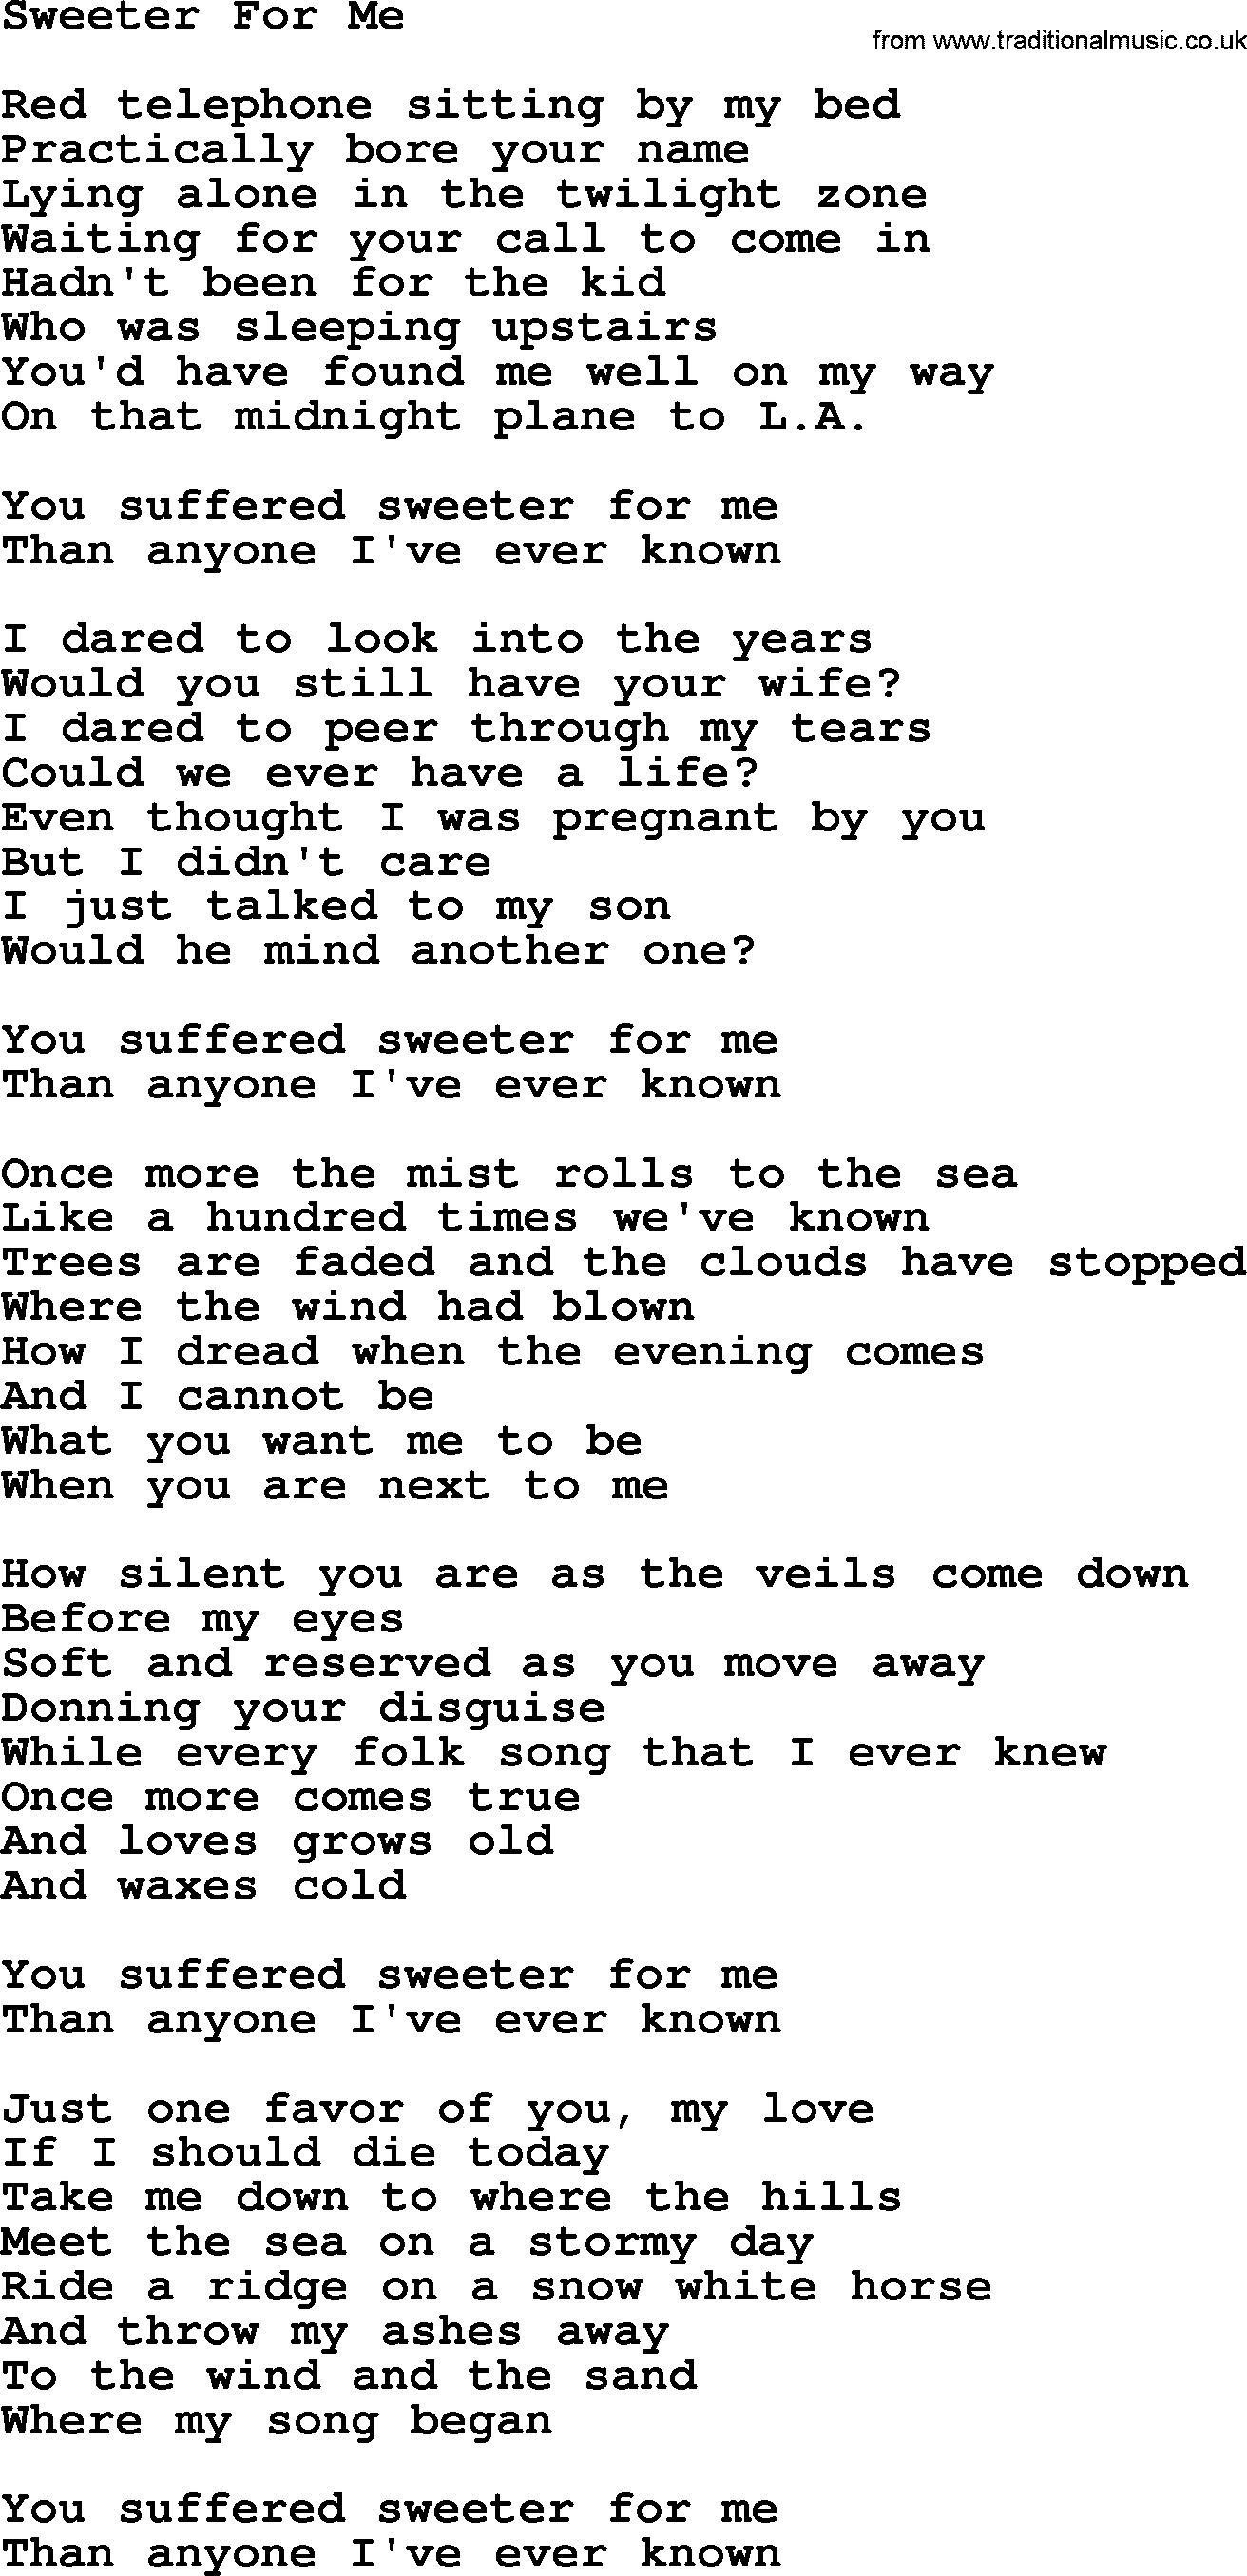 Joan Baez song Sweeter For Me, lyrics